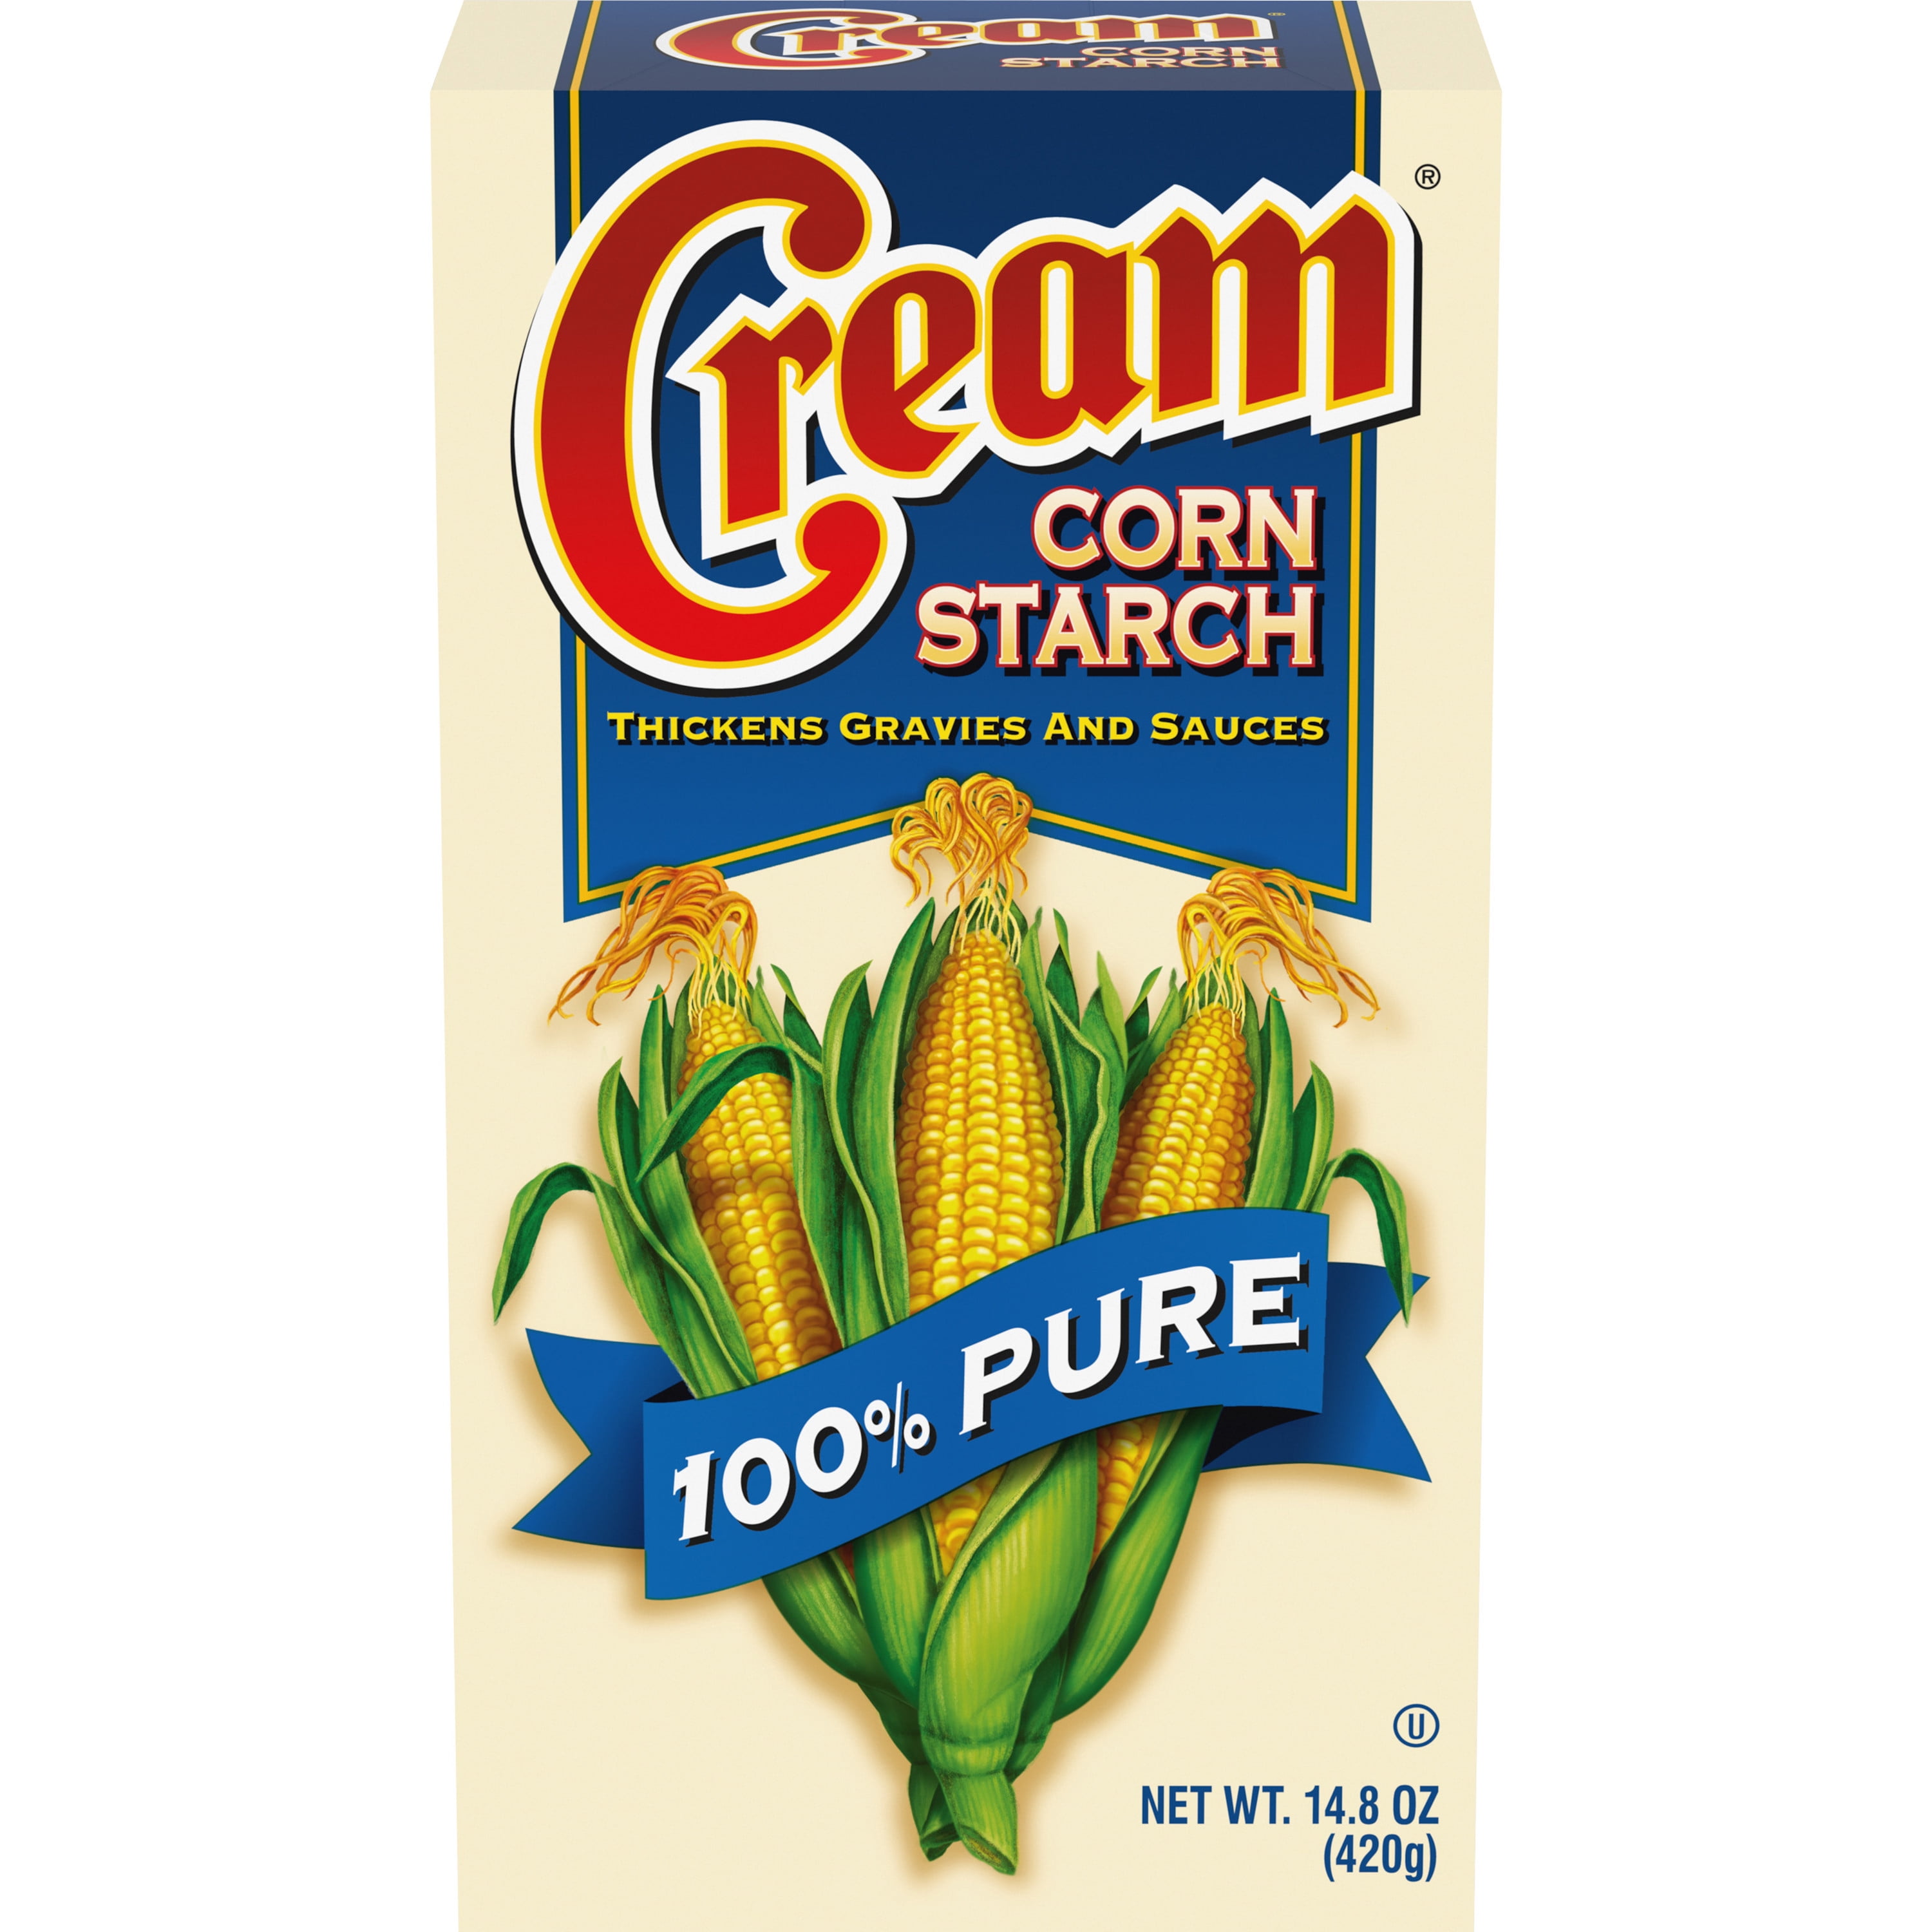 Corn starch chunks😍 #cornstarcheating #cornstarchasmr #cornstarchaddi